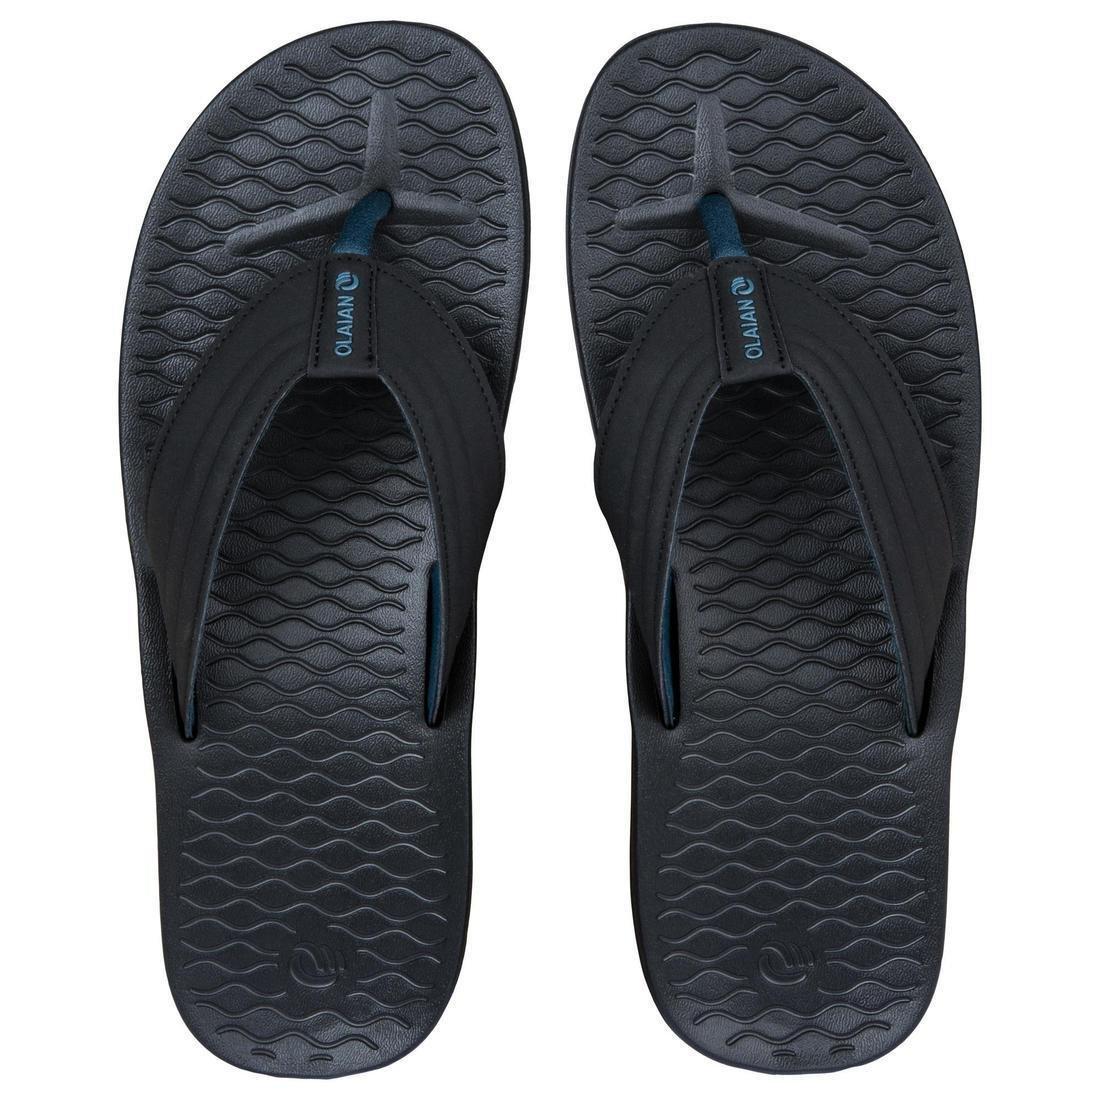 OLAIAN - Men's Flip-Flops 550, Black